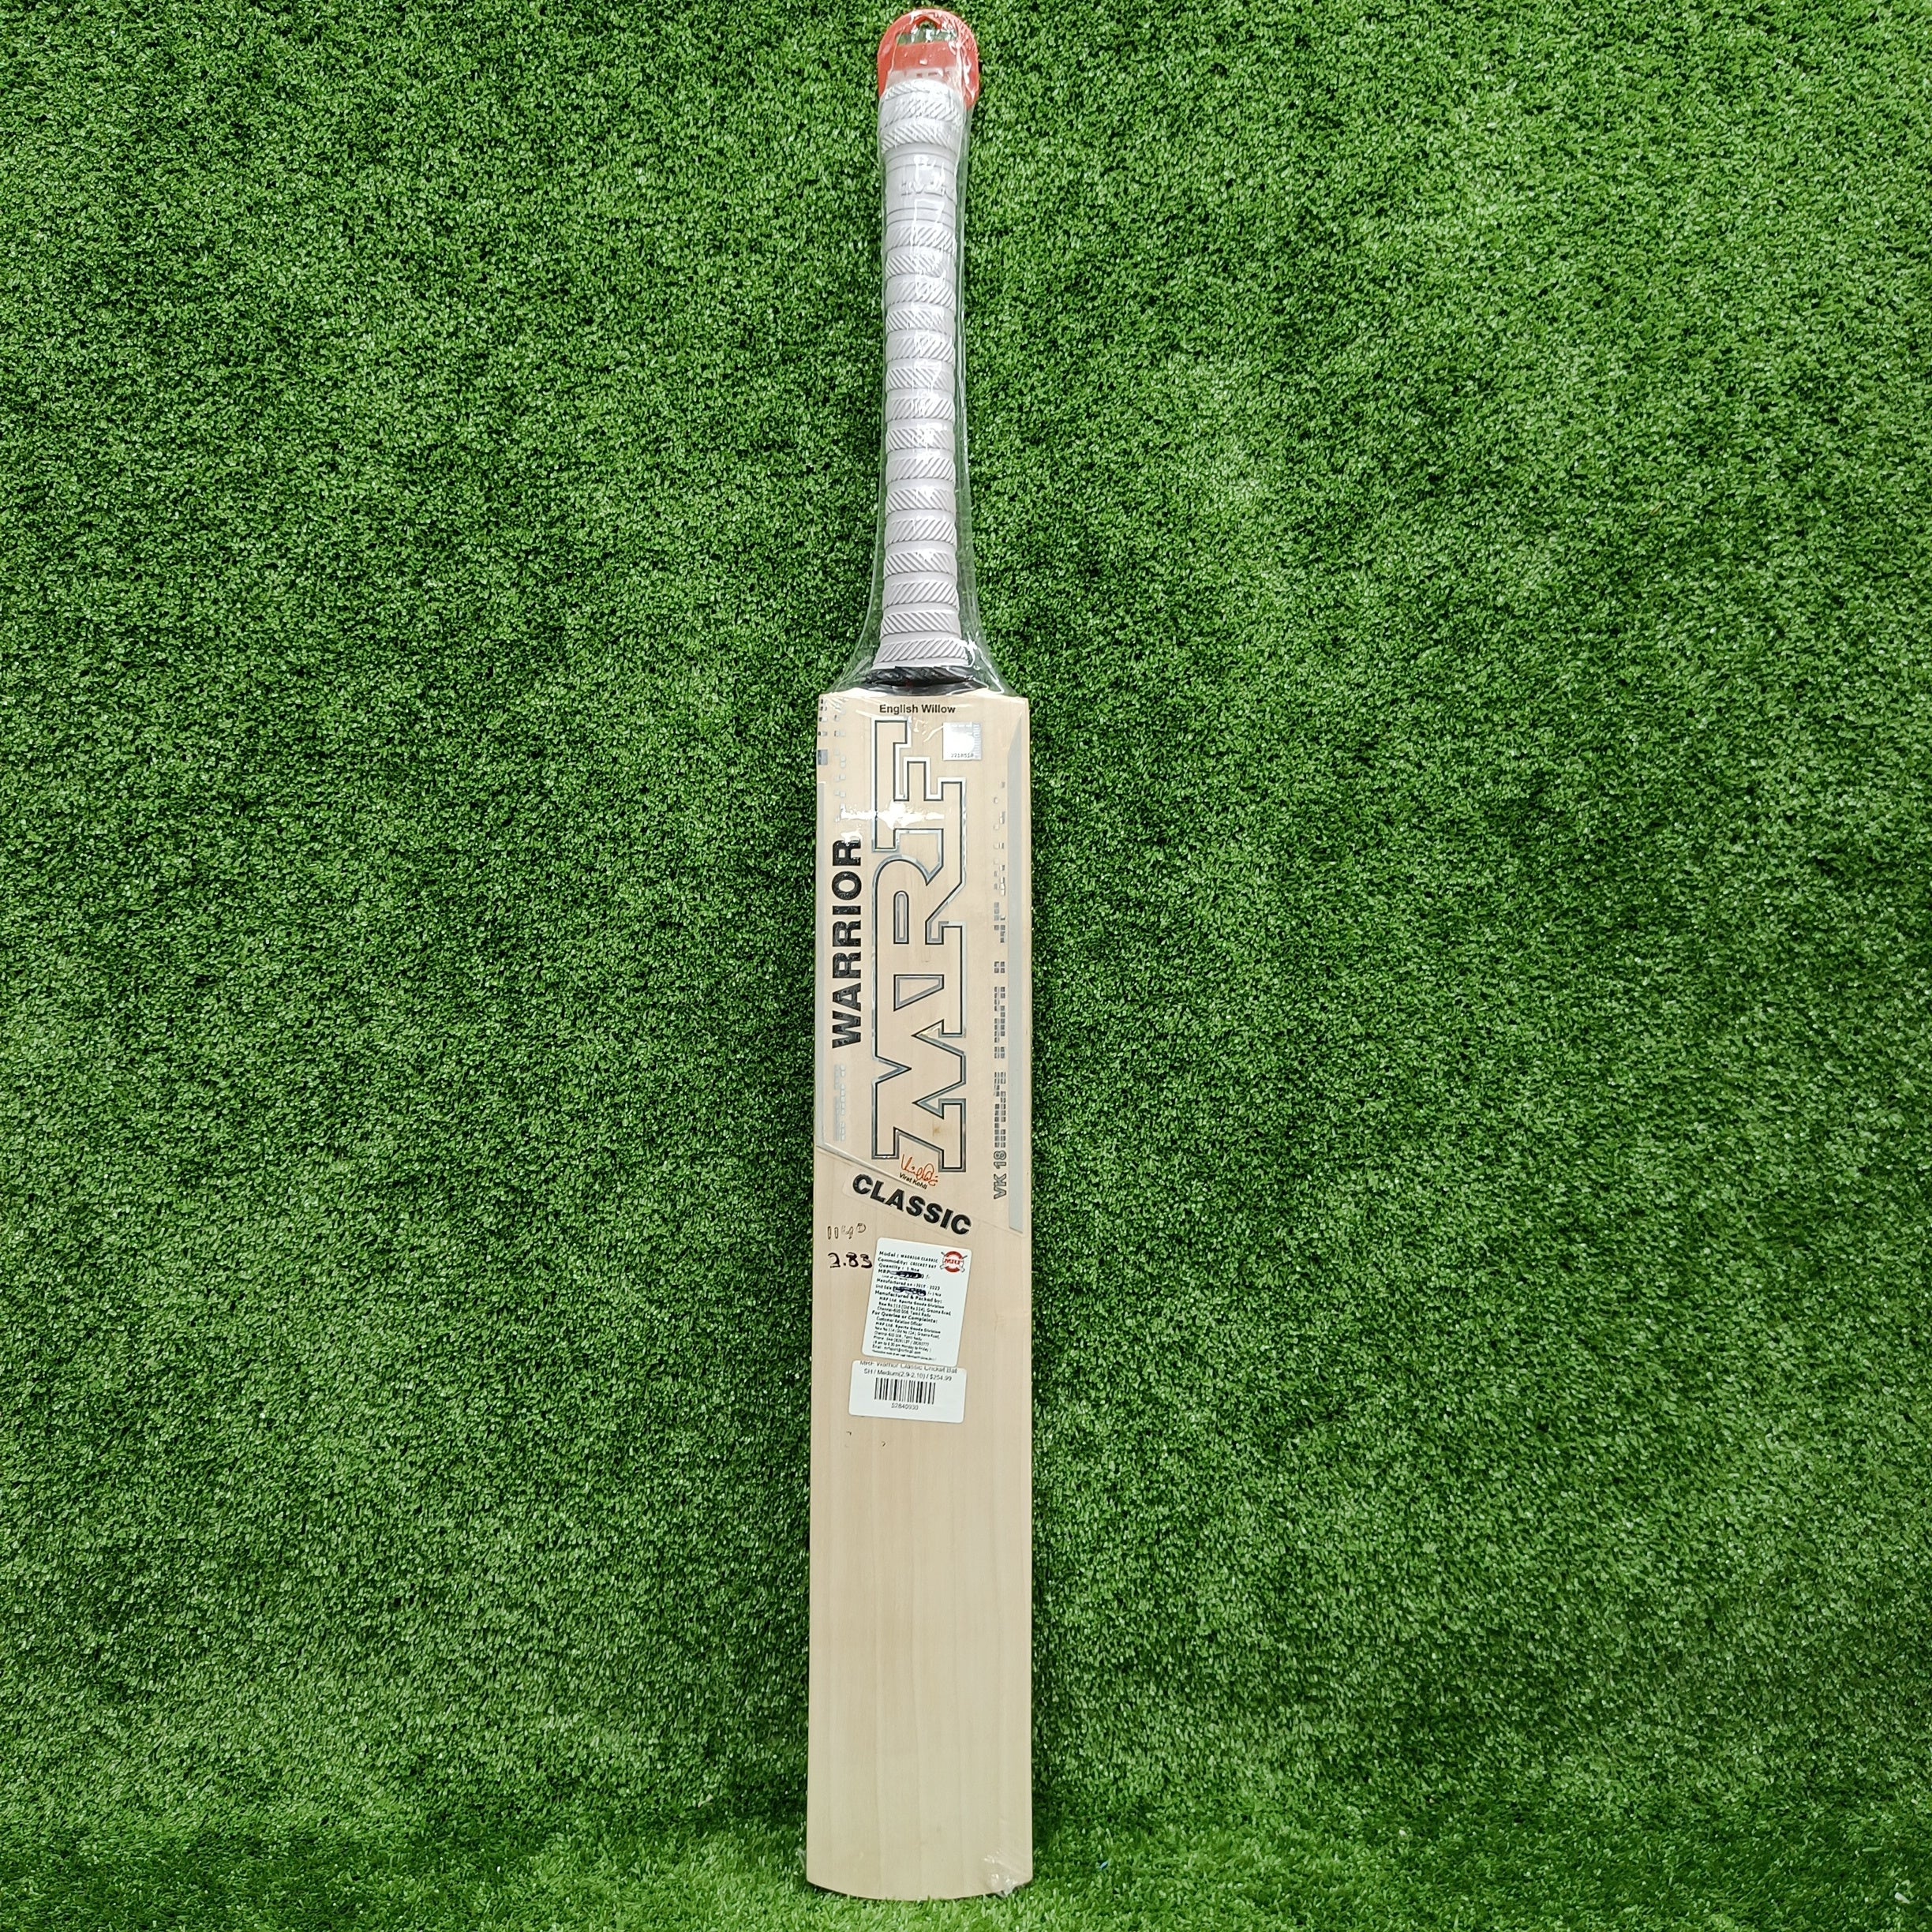 MRF Warrior Classic Cricket Bat